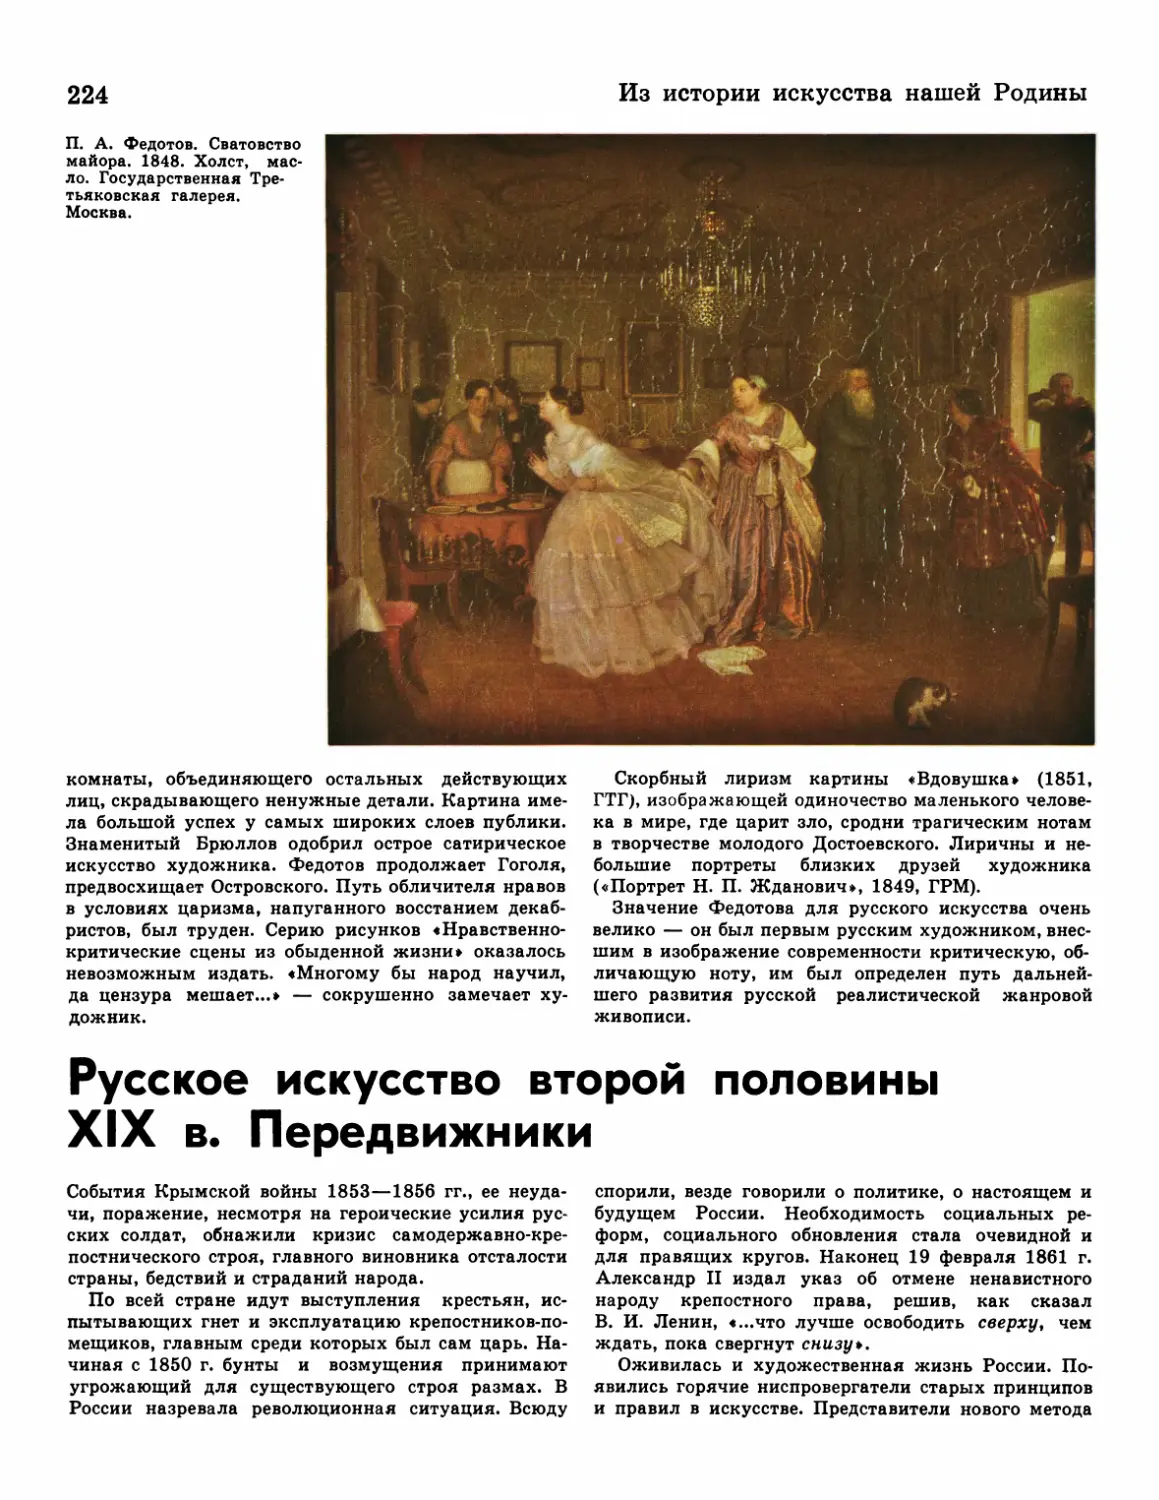 Русское искусство второй половины XIXв. Передвижники